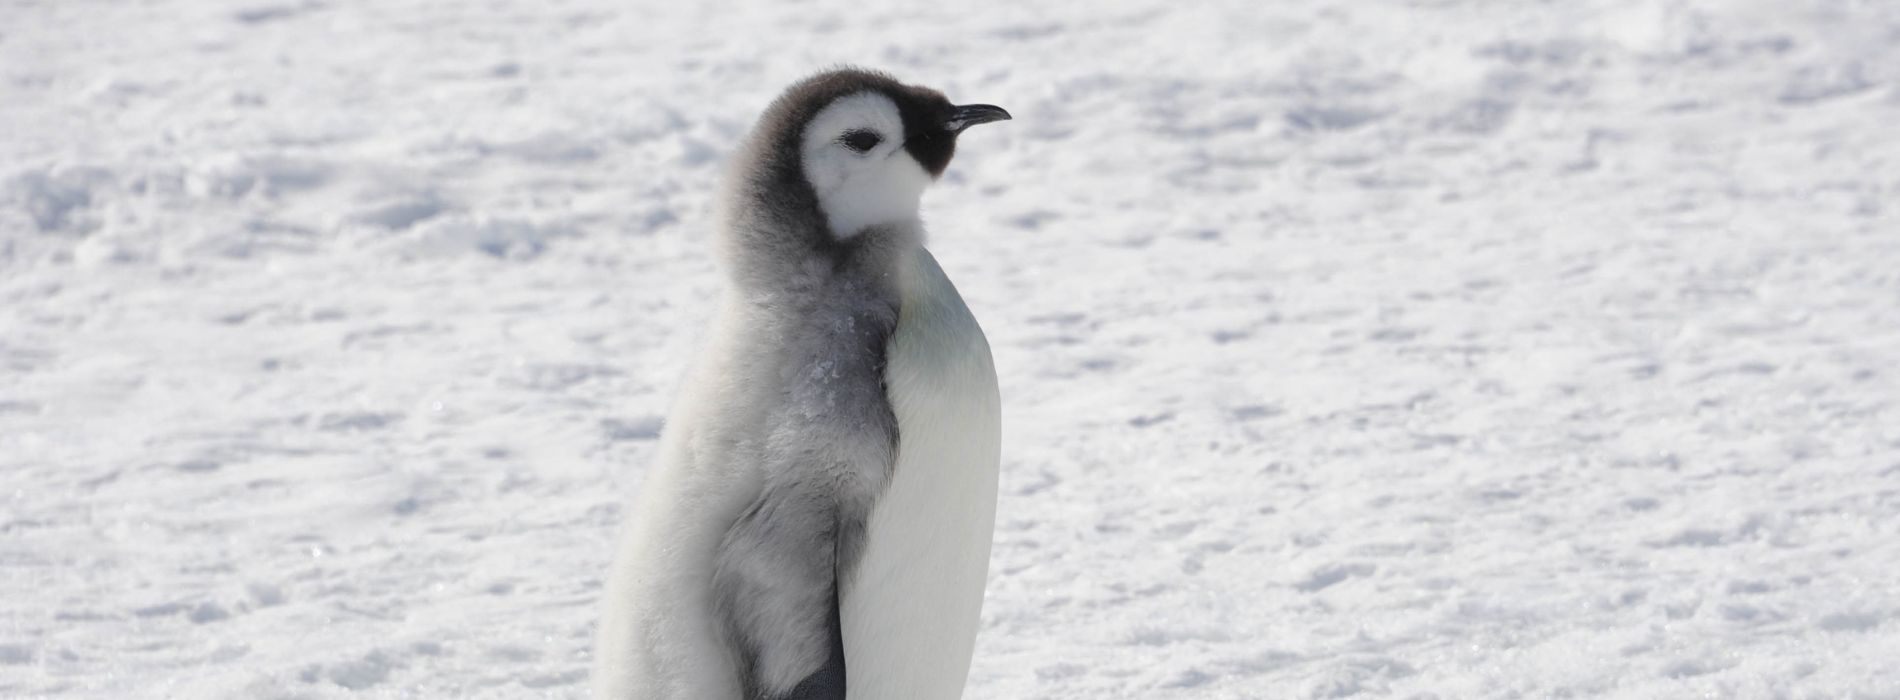 Do penguins feel hot?